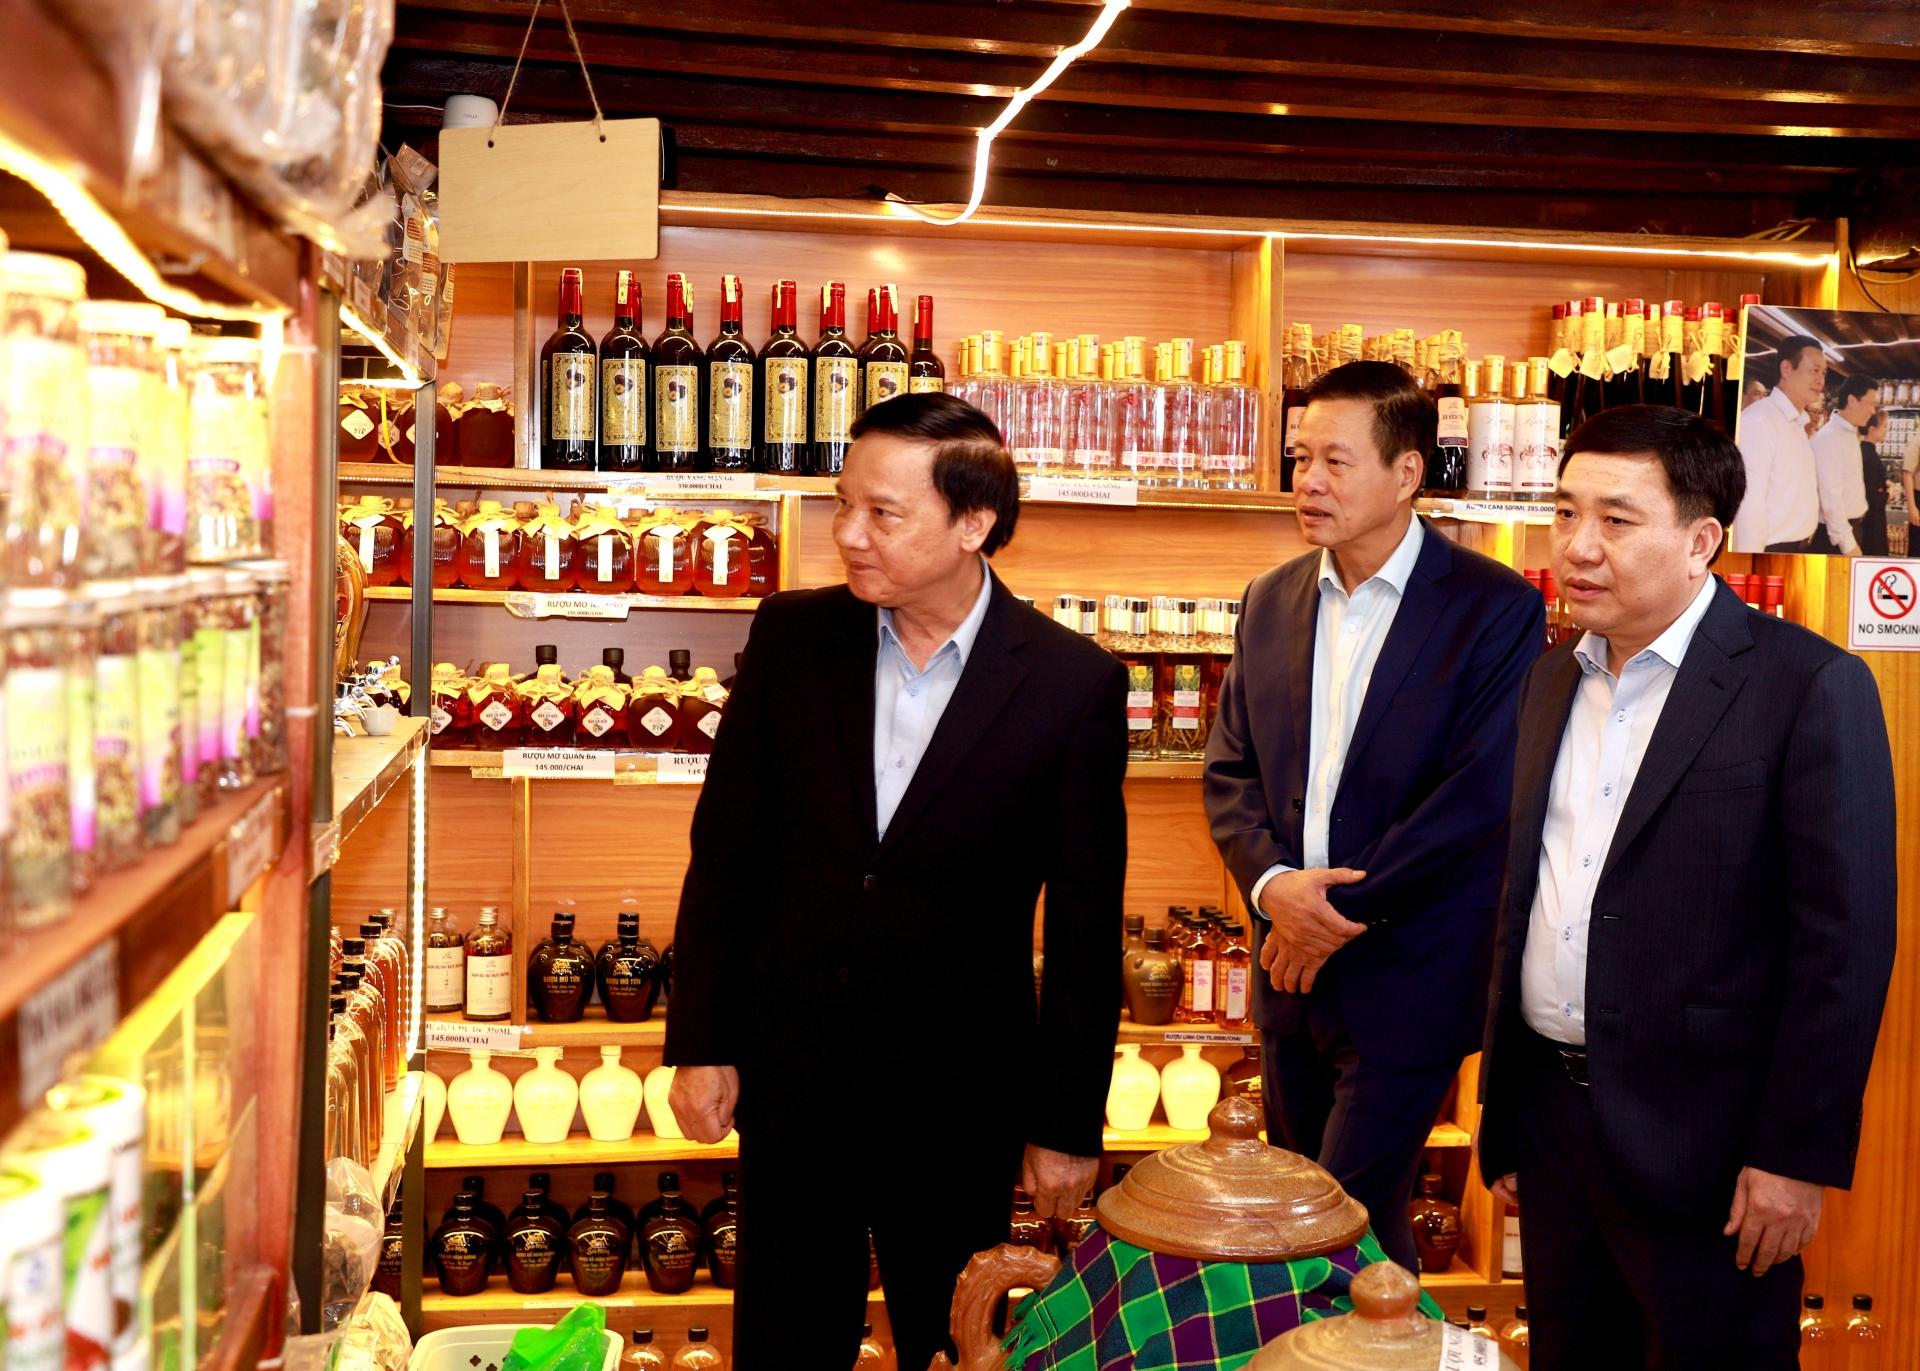 Phó Chủ tịch Quốc hội Nguyễn Khắc Định cùng các đồng chí lãnh đạo tỉnh tham quan gian trưng bày các sản phẩm đặc trưng của huyện Bắc Quang.